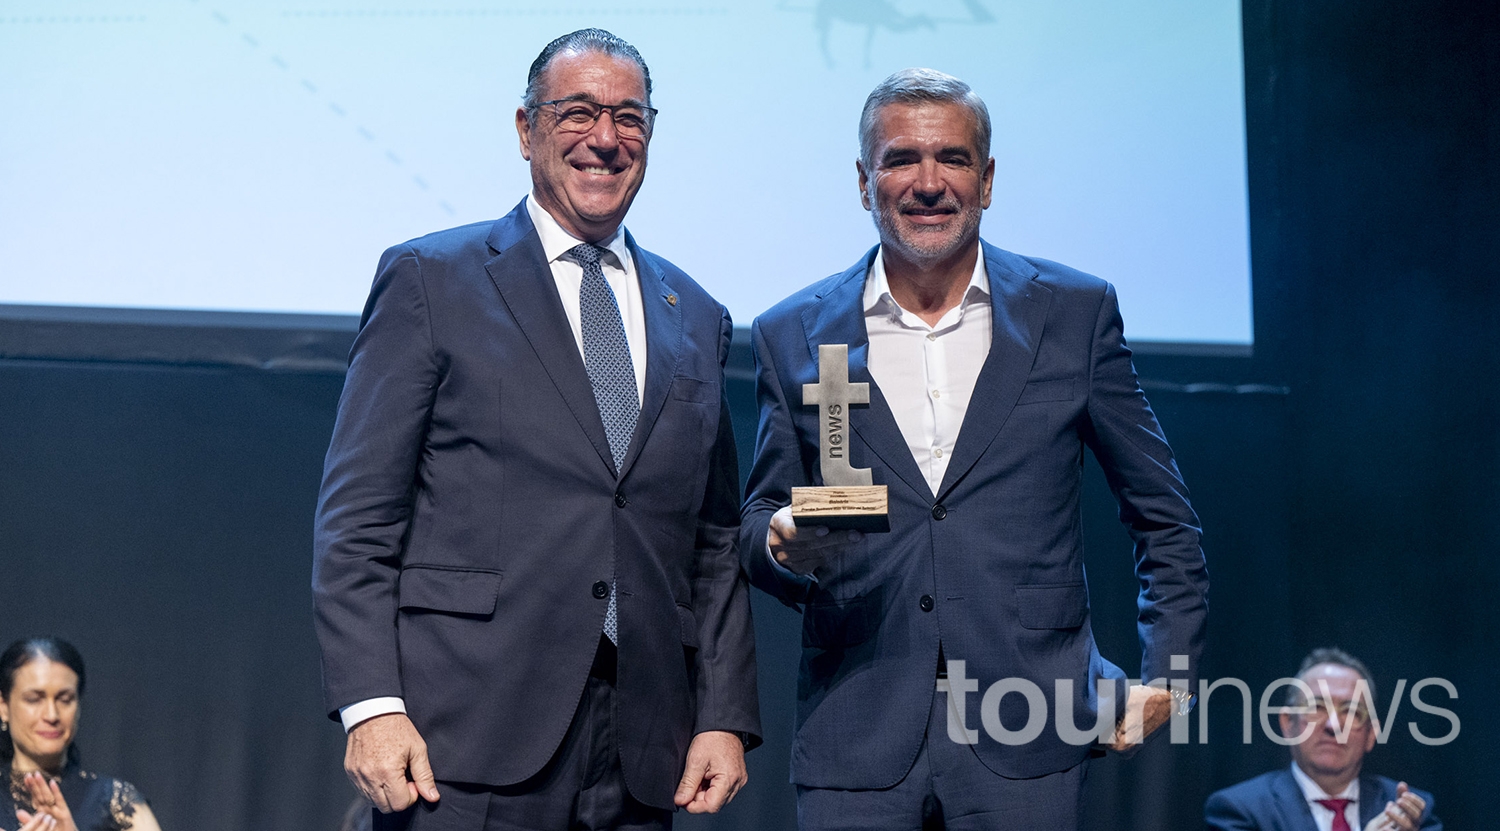 Juan Manuel Martín de Oliva y Adolfo Utor posan juntos en la gala de los Premios Tourinews 2023.